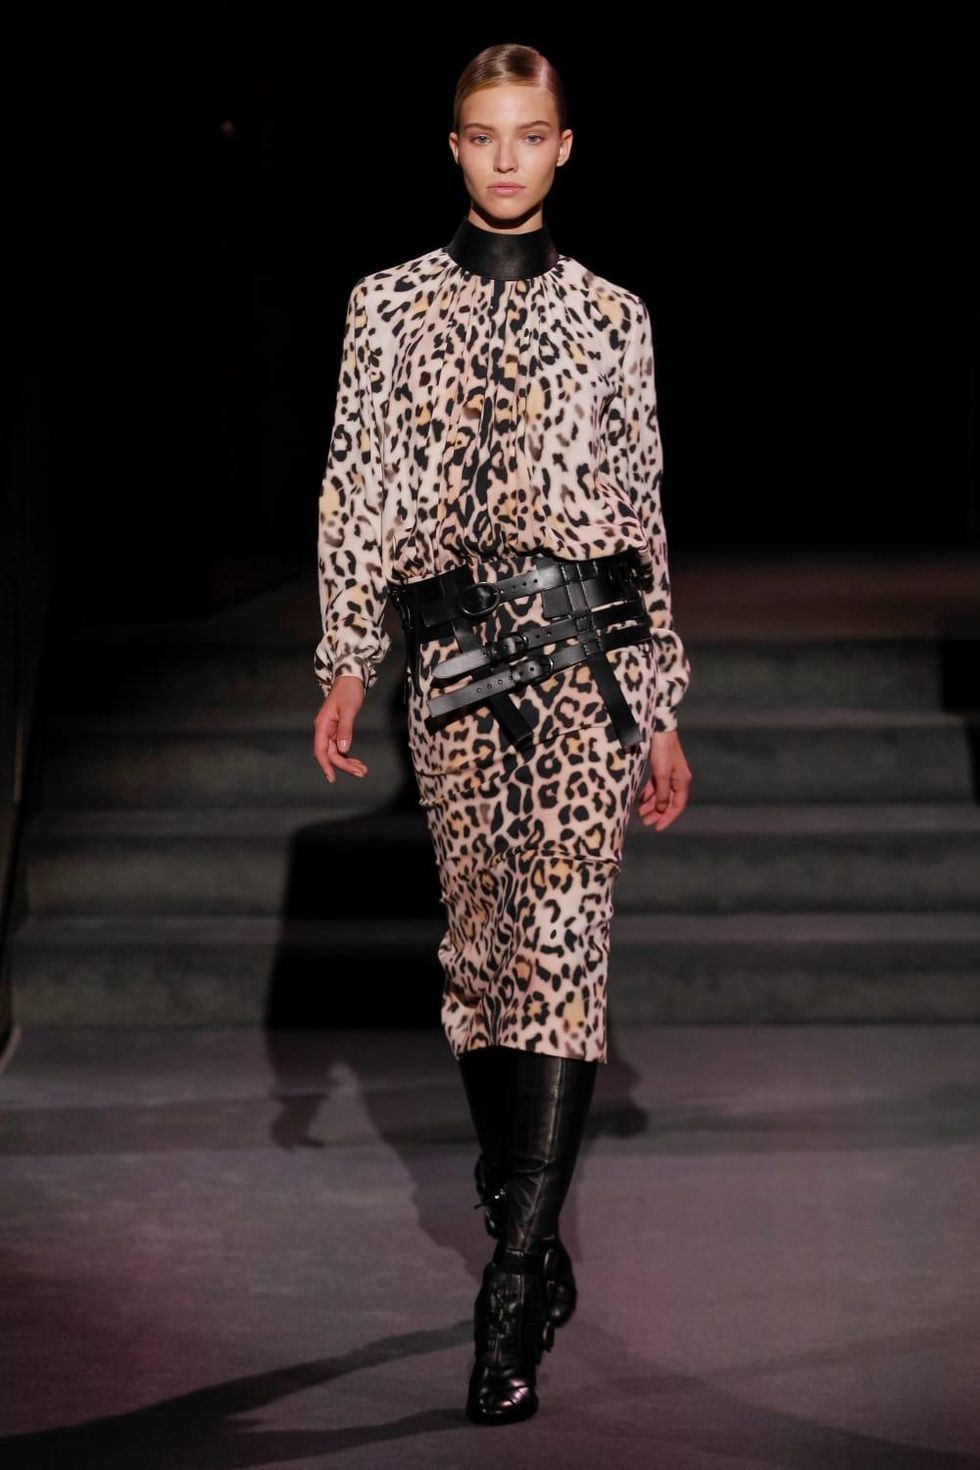 Tom Ford look 22 leopard print dress